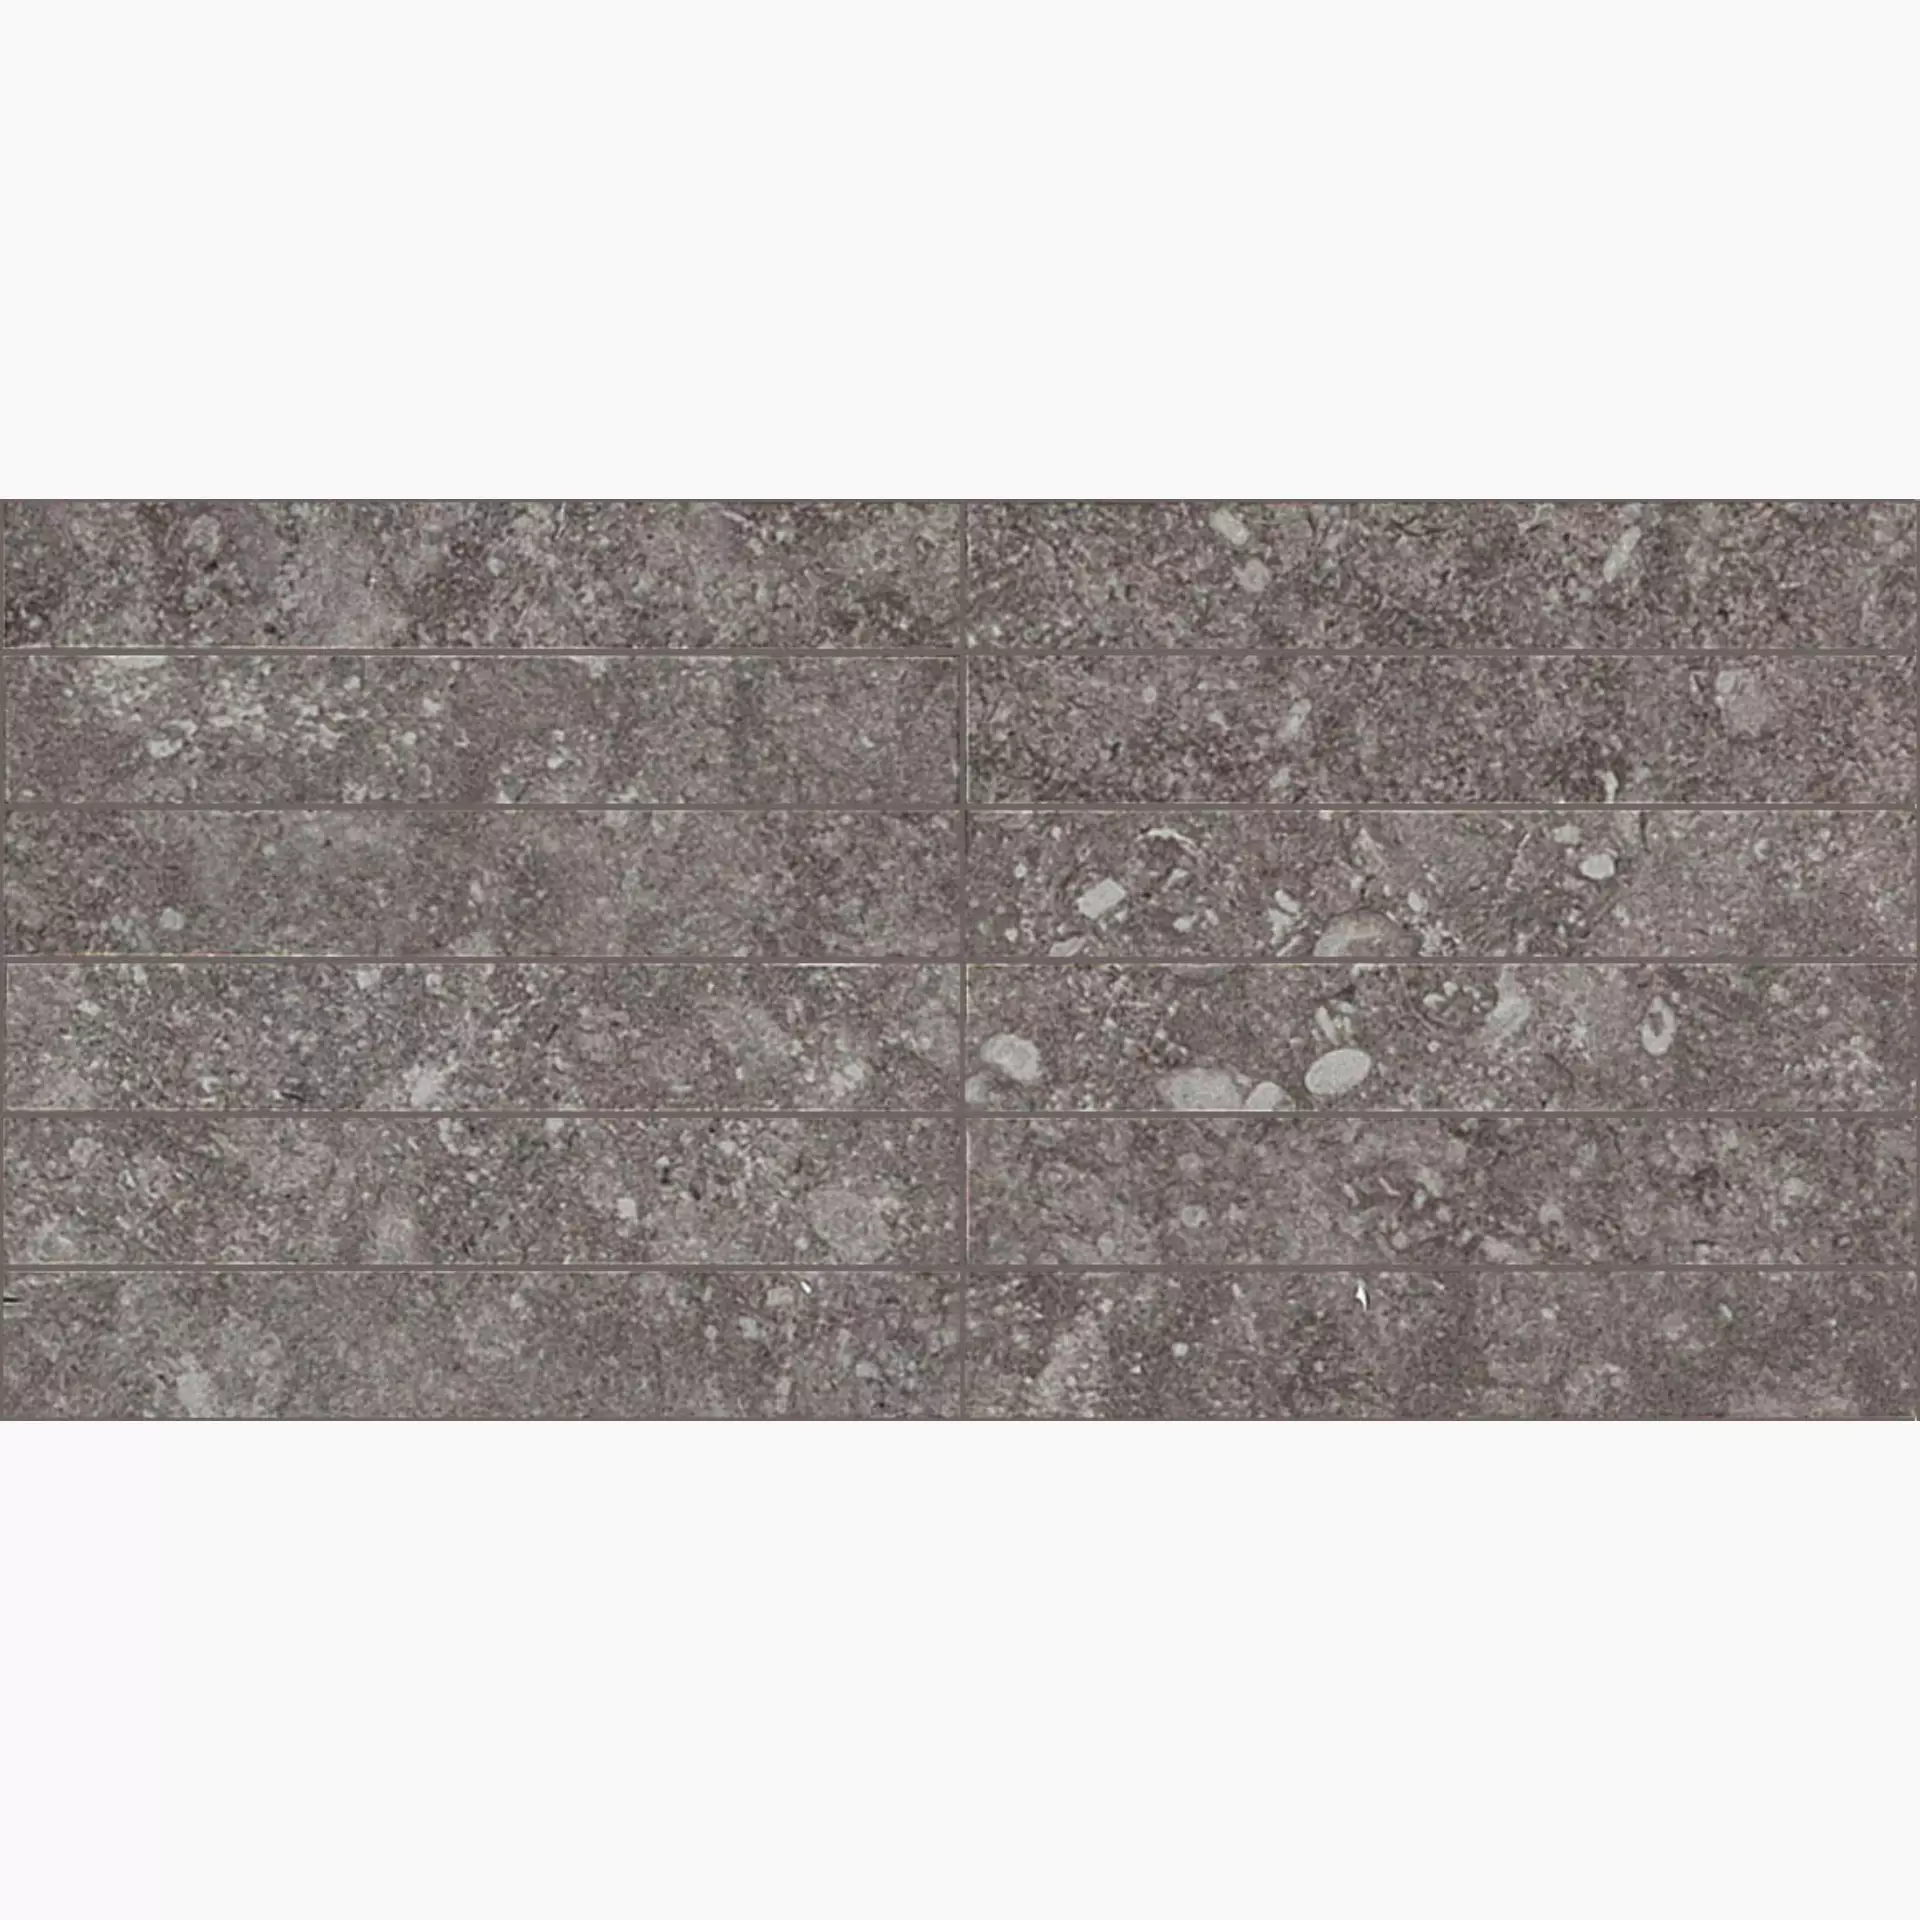 Bodenfliese,Wandfliese Marazzi Mystone Bluestone Piombo Naturale – Matt Piombo M0CK matt natur 14x29cm Mosaik 3D 10mm